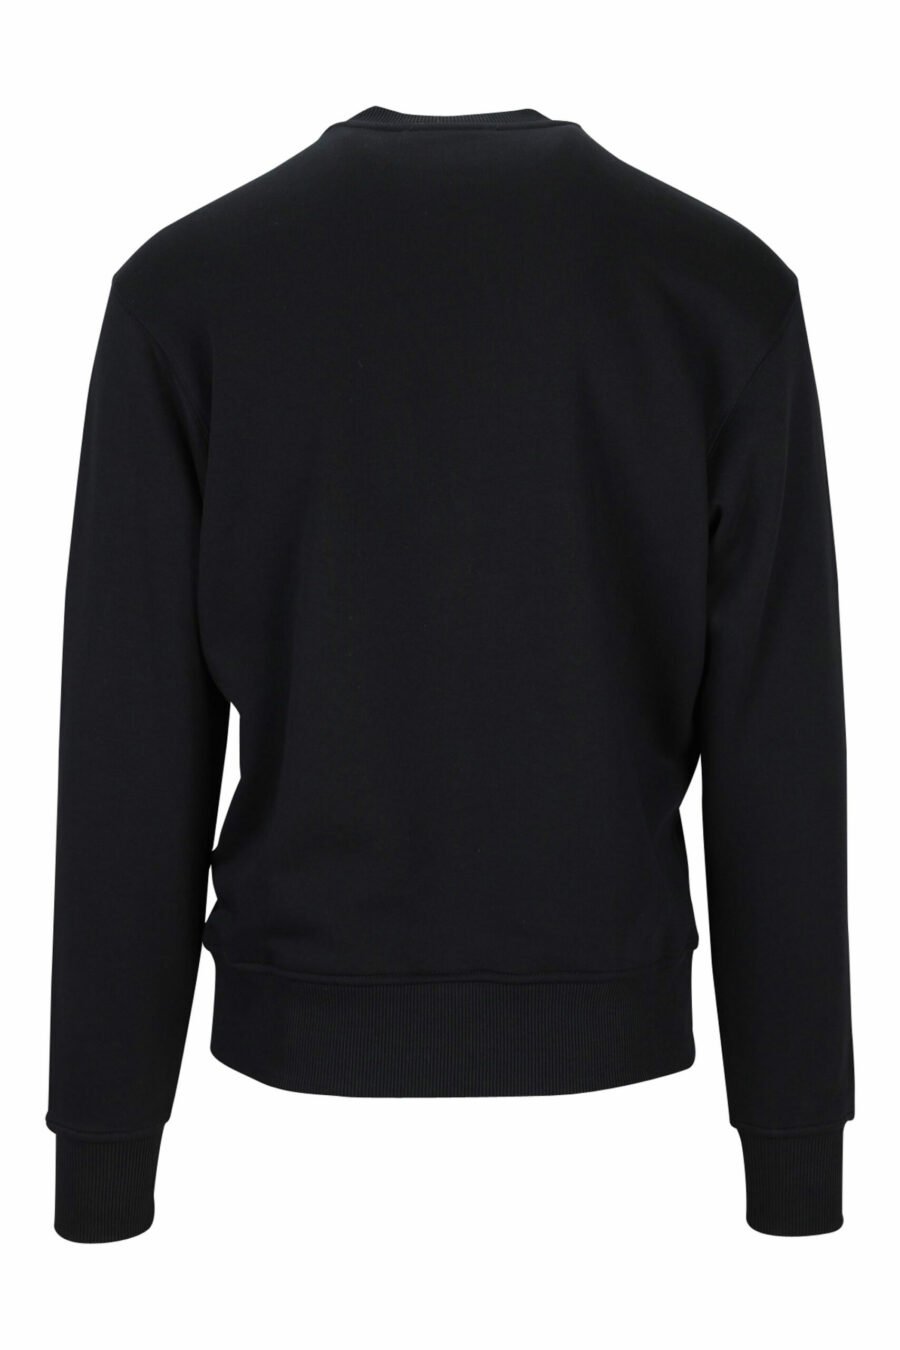 Schwarzes Sweatshirt mit kontrastierendem kreisförmigem Maxilogo - 8052019472189 1 skaliert